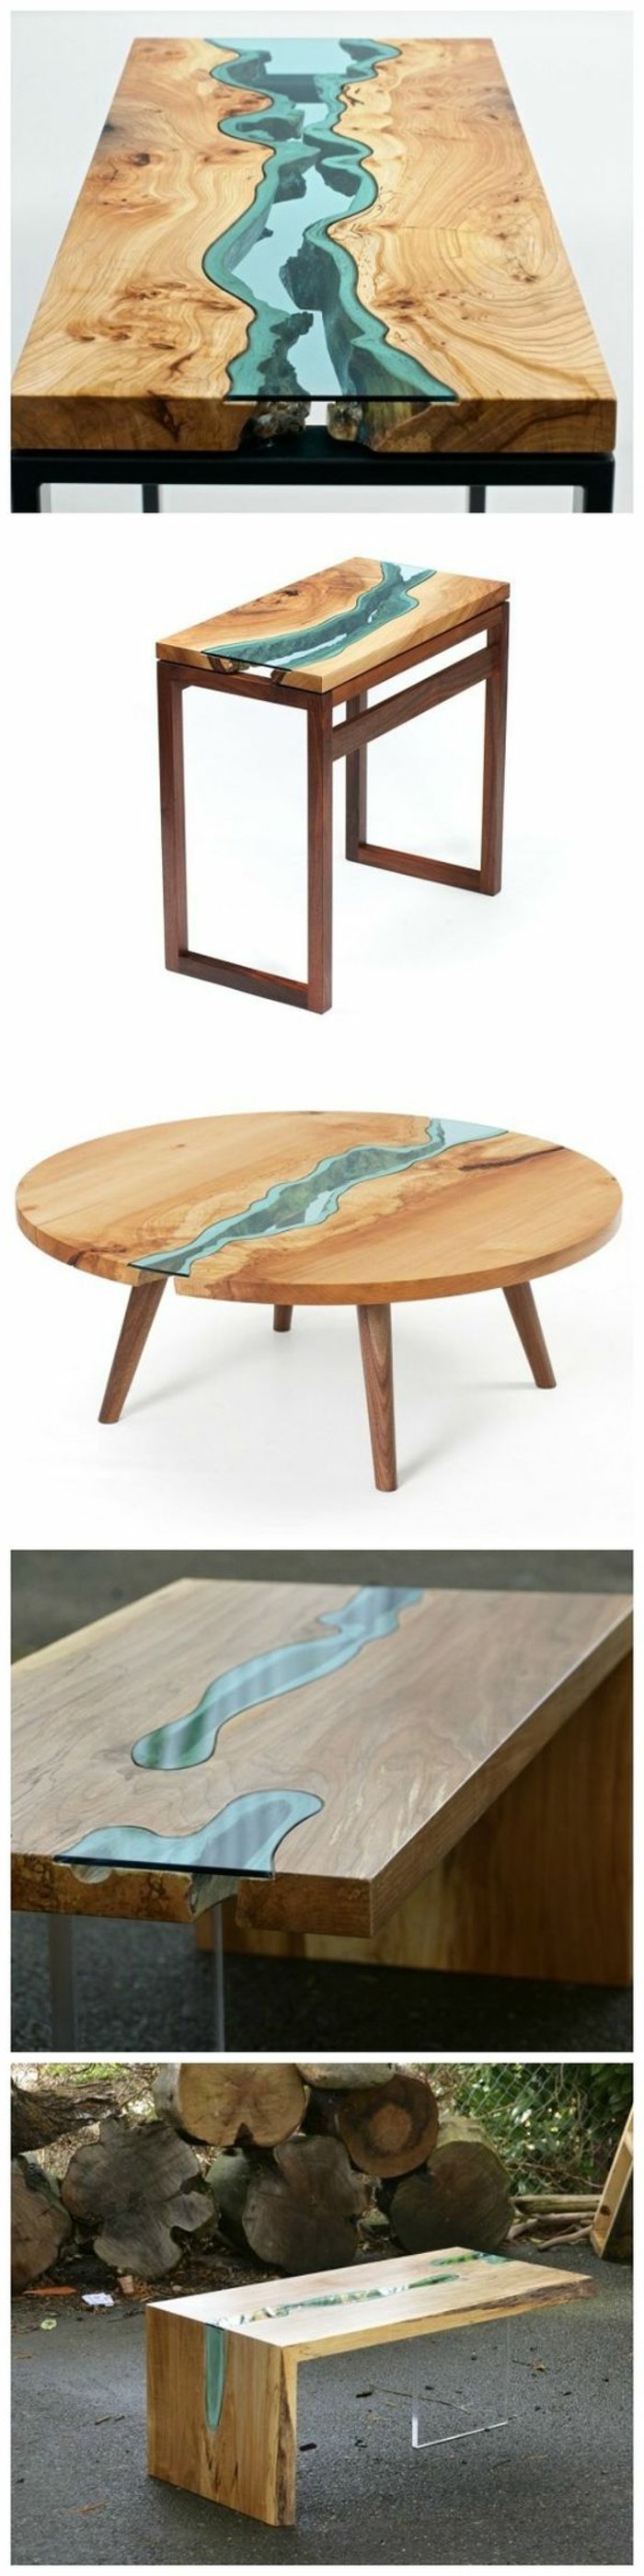 DIY-moebel-creativa-Wohnideen-tabla-de-madera y cristal-propio-build